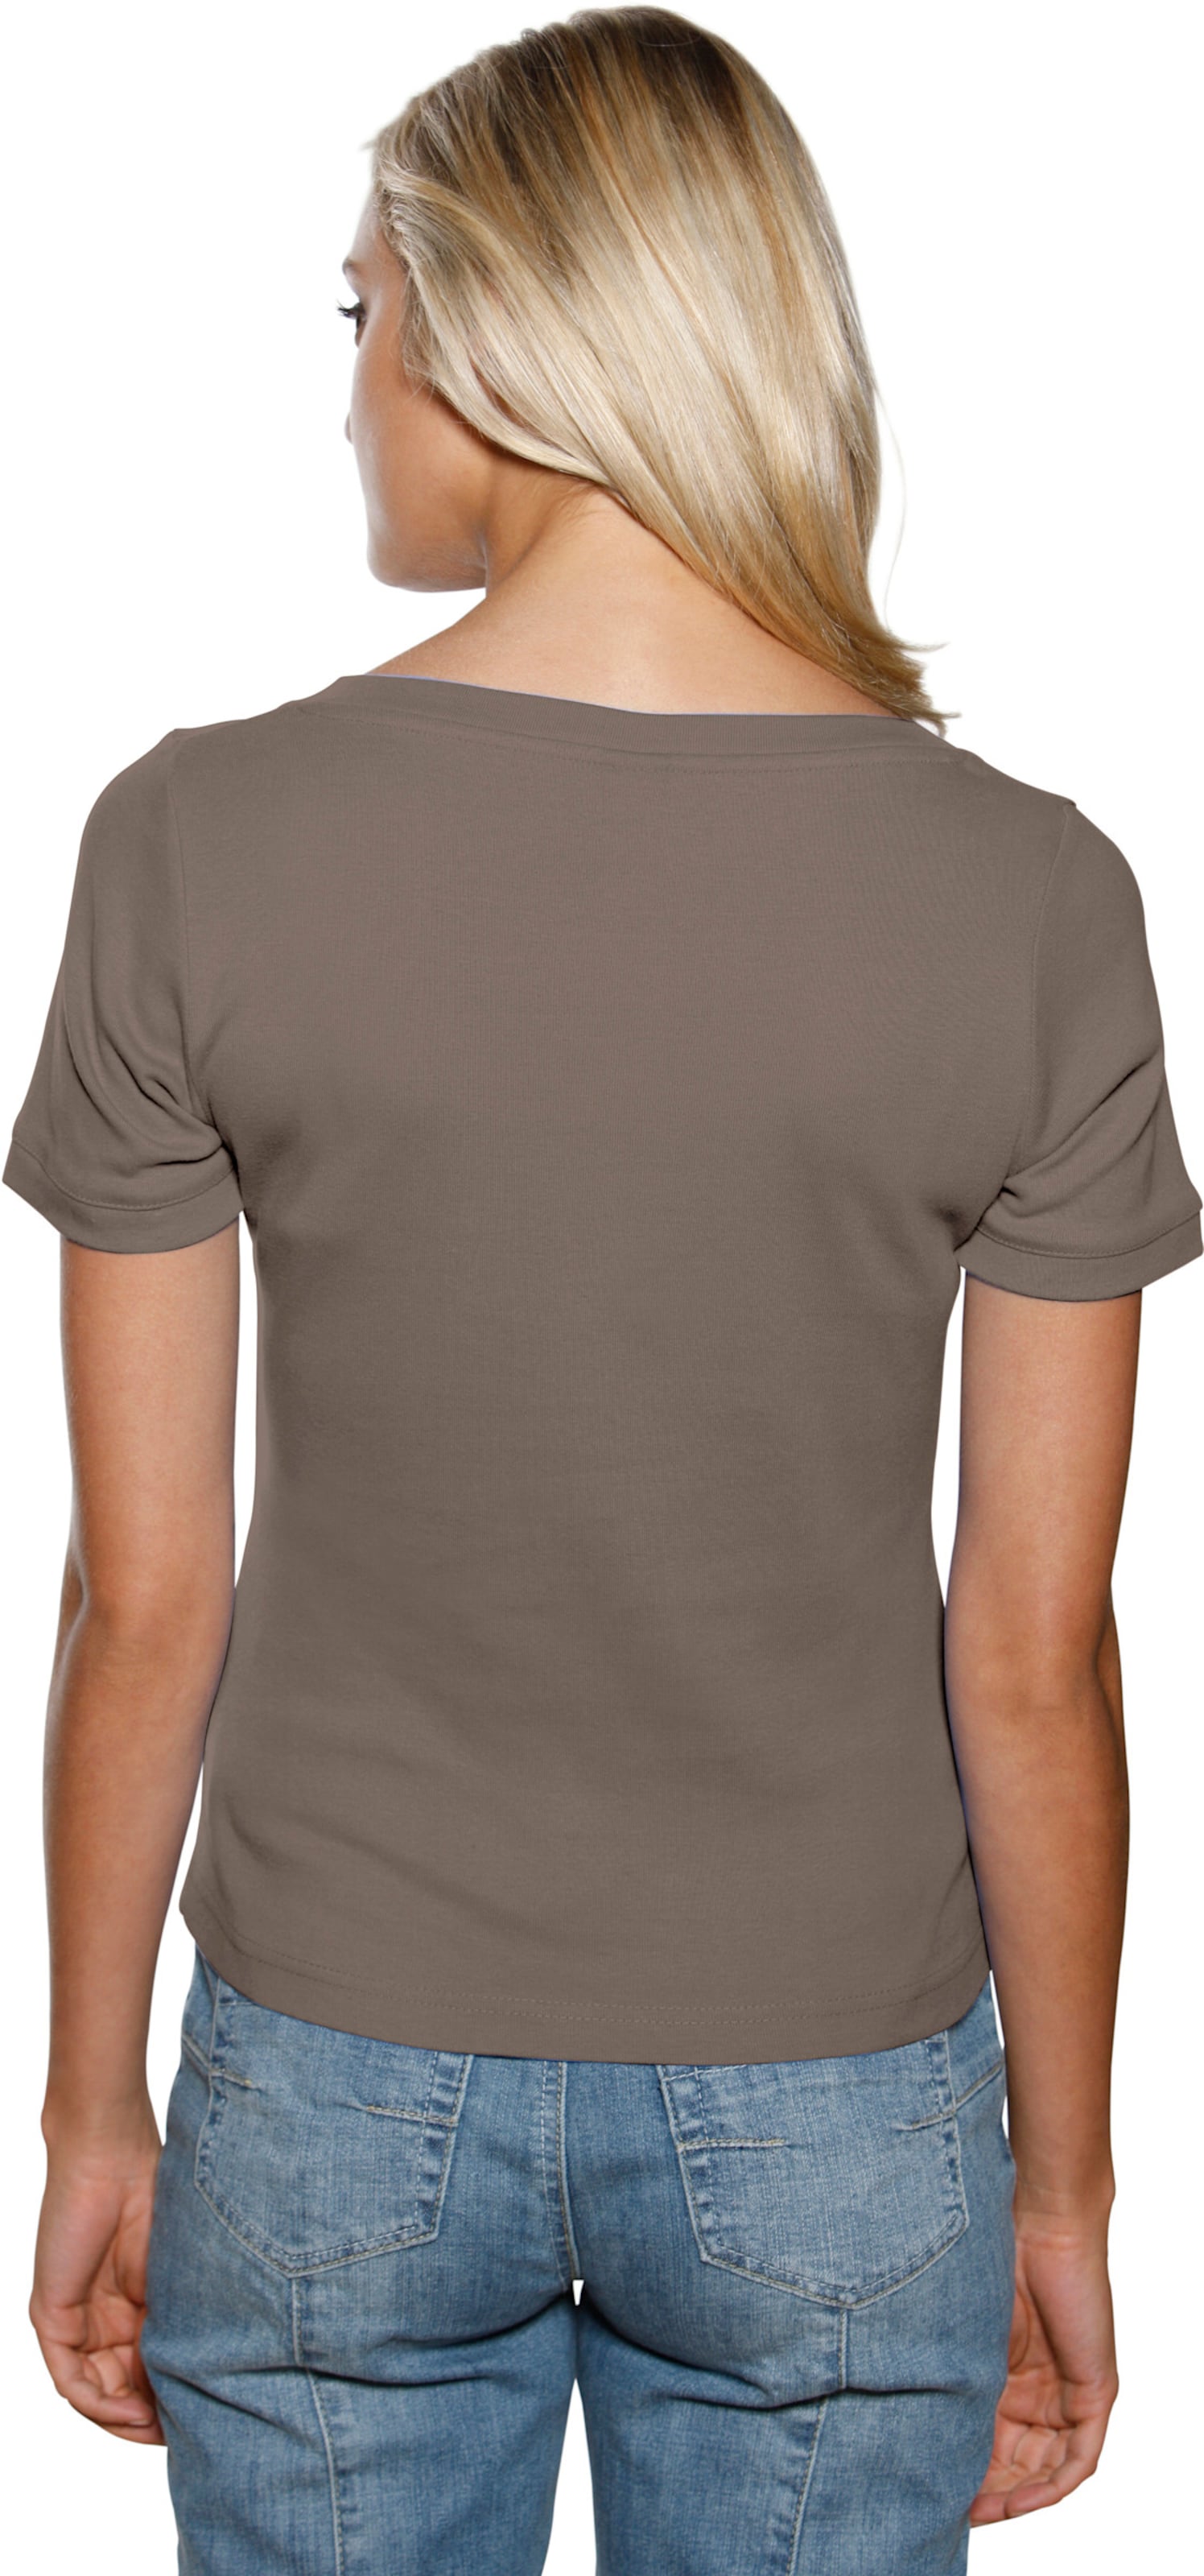 Figur mit günstig Kaufen-Carré-Shirt in taupe von heine. Carré-Shirt in taupe von heine <![CDATA[Carré-Shirt Mit großzügigem Ausschnitt. Aus trageangenehmer, feiner Rippenware. Figurbetonte Form.]]>. 